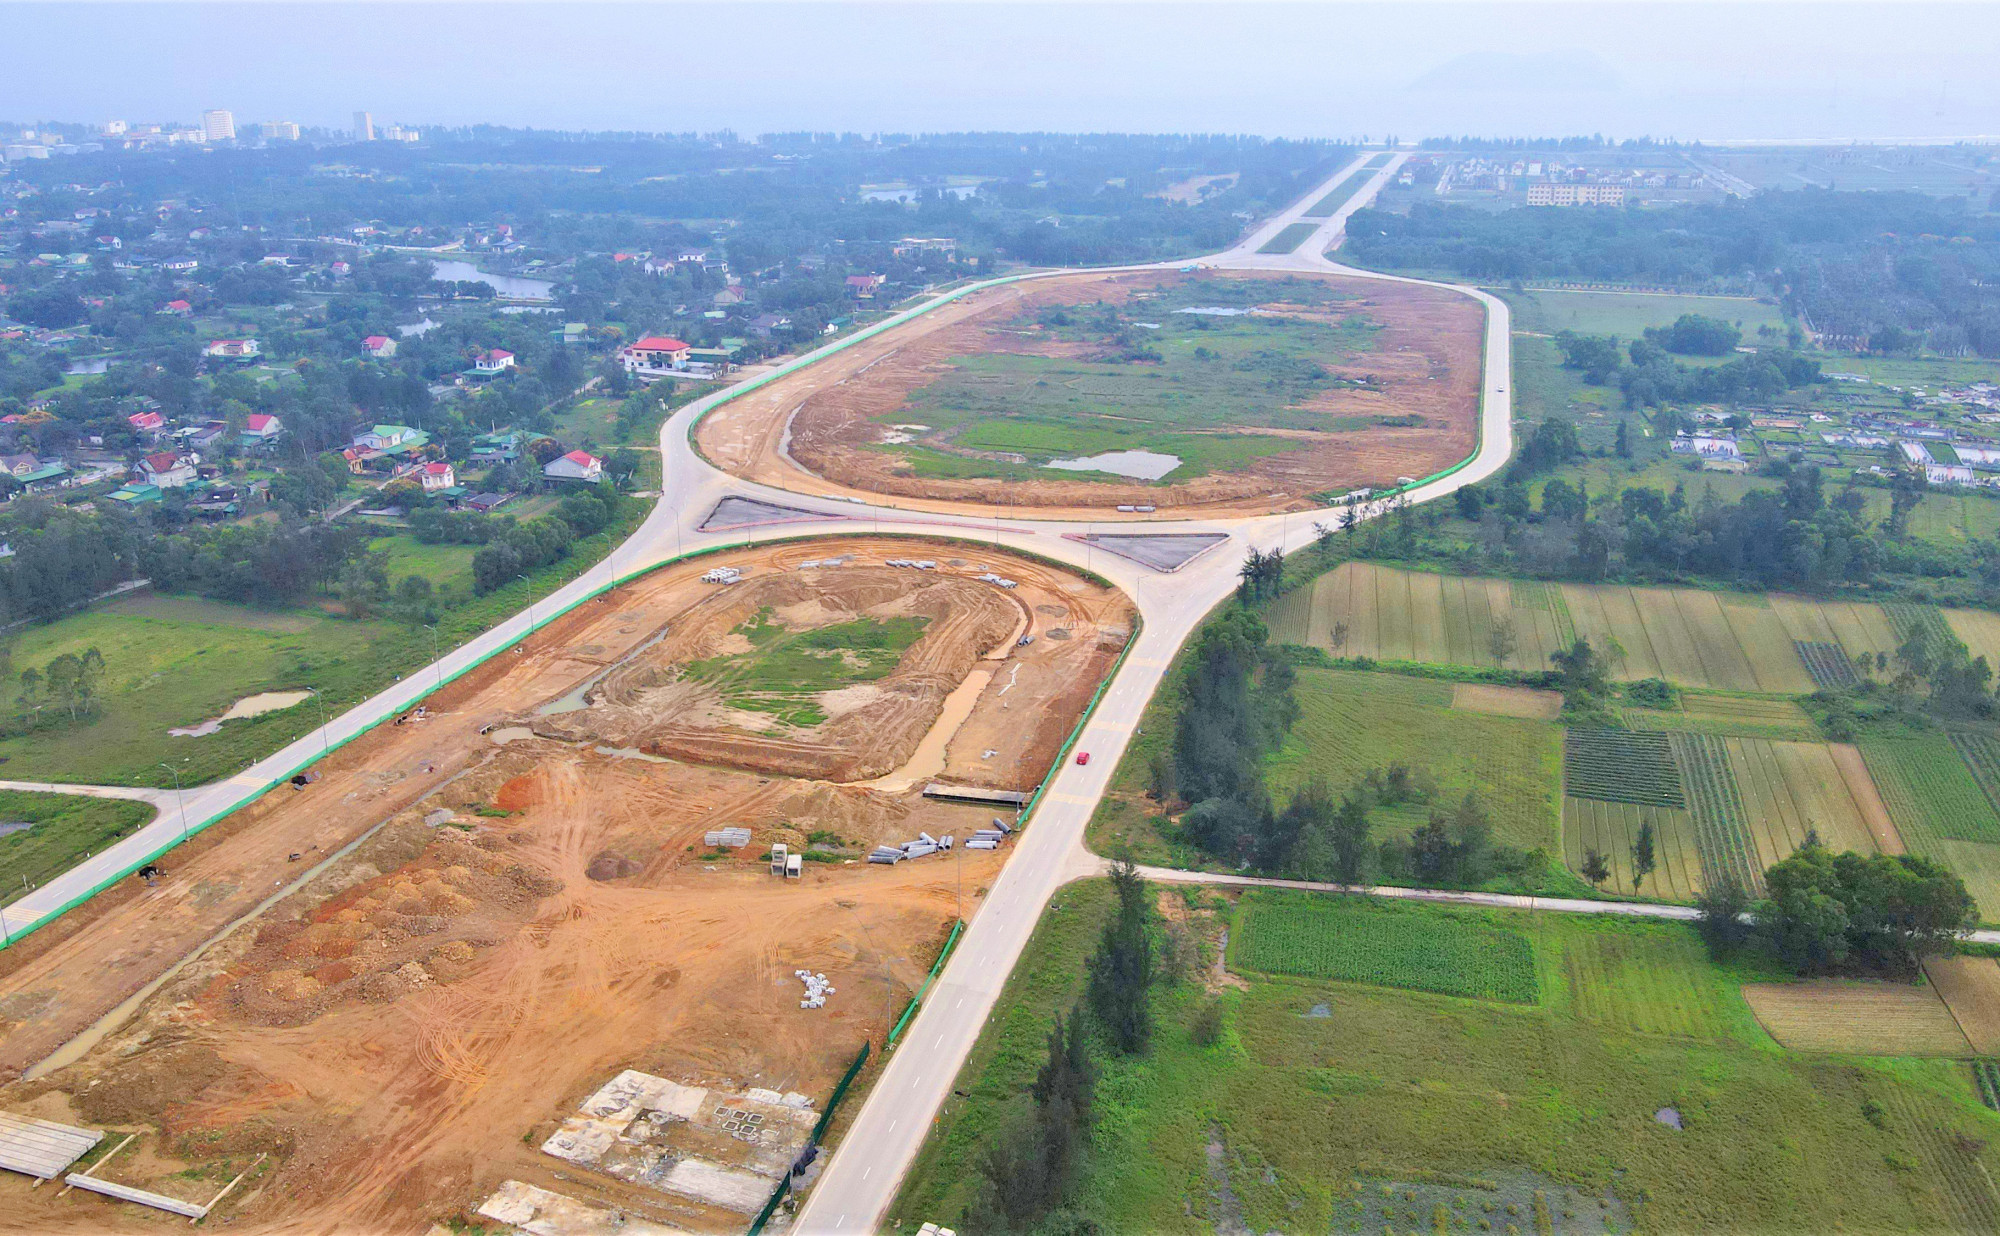 Năm 2010, UBND tỉnh Nghệ An phê duyệt dự án đại lộ Vinh - Cửa Lò với mức đầu tư 4.157 tỉ đồng từ ngân sách nhà nước. Đây là tuyến đại lộ lớn nhất Nghệ An, dài 10,8km, mặt đường rộng 160m, đi qua 3 địa phương gồm TP Vinh, huyện Nghi Lộc và thị xã Cửa Lò.